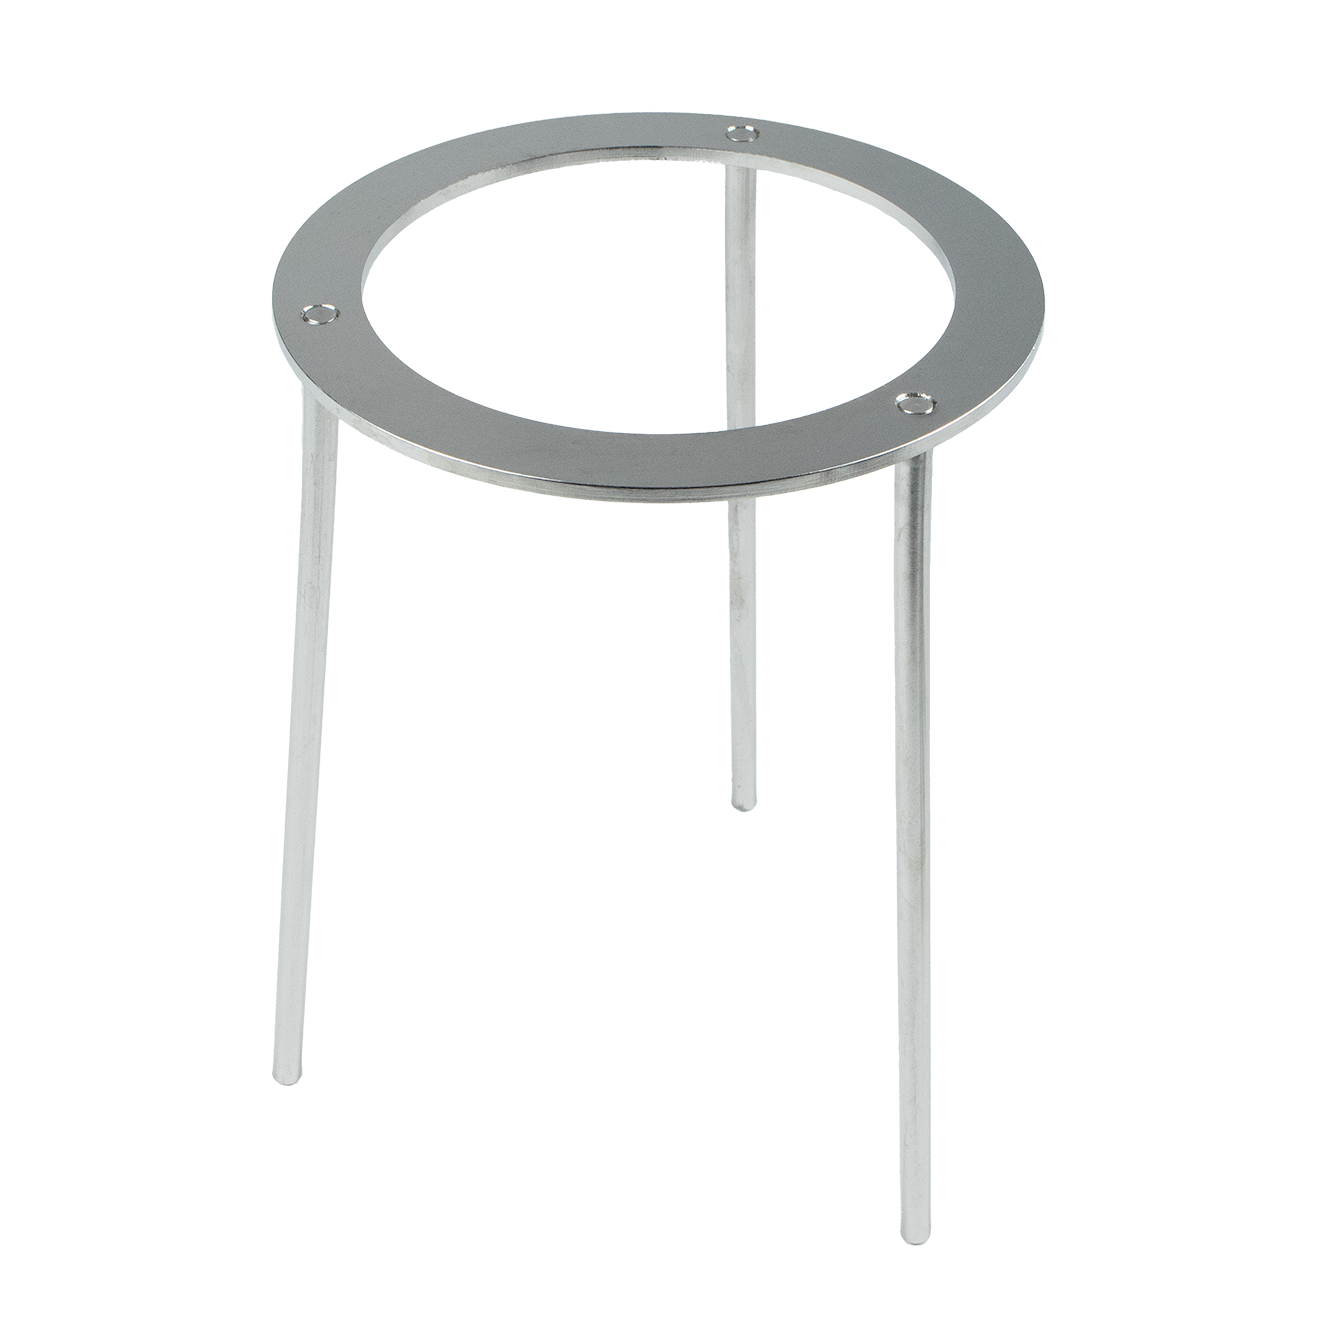 Tripod - height 210 mm, inner diameter 120 mm - stainless steel